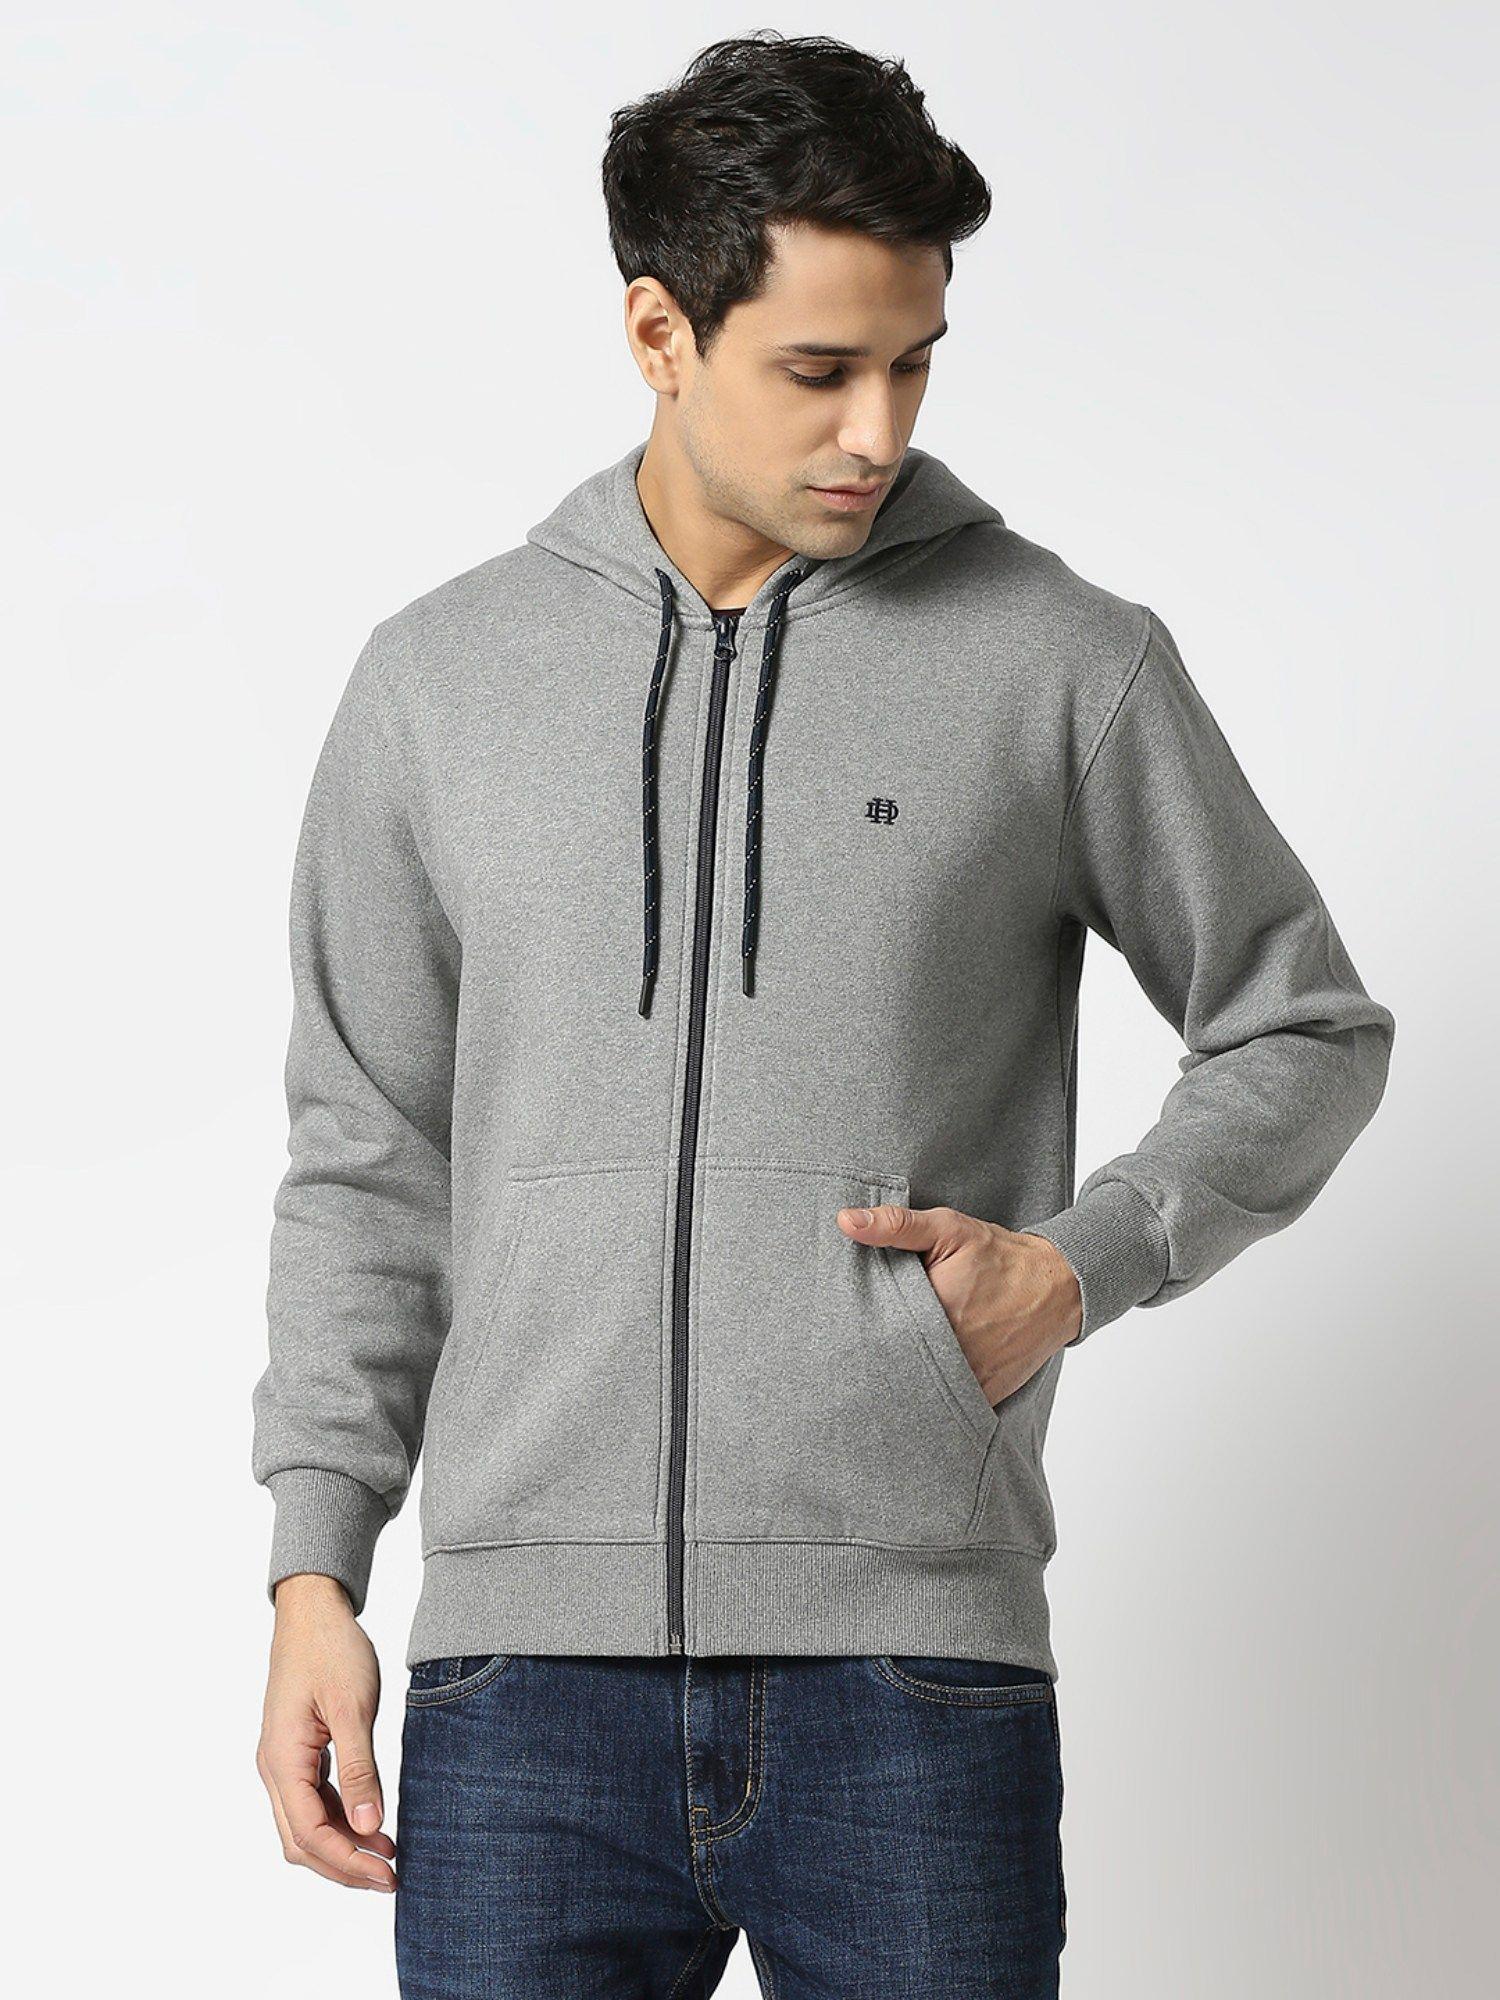 full sleeves grey melange full zip fleece hoodie